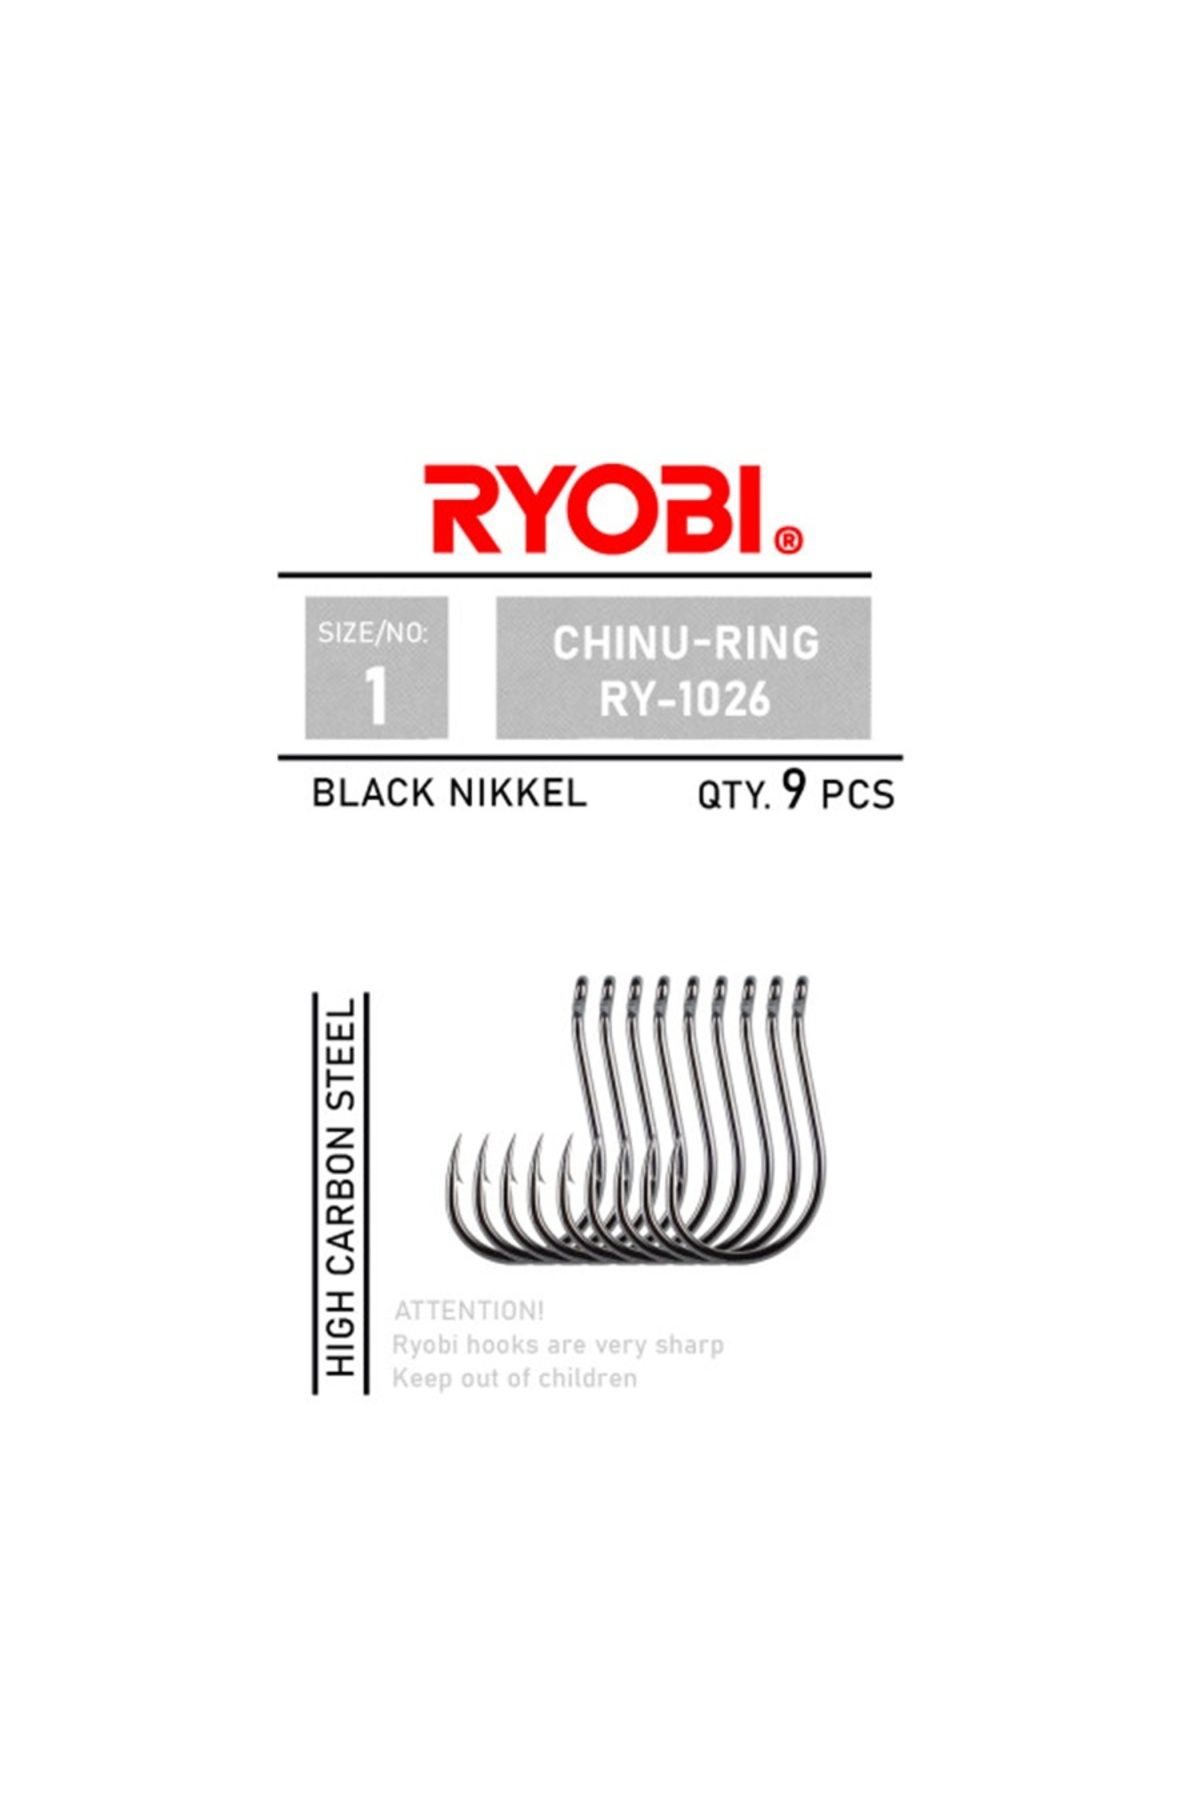 Ryobi Chinu-Ring RY-1026 Black Nickel Olta İğnesi No:5